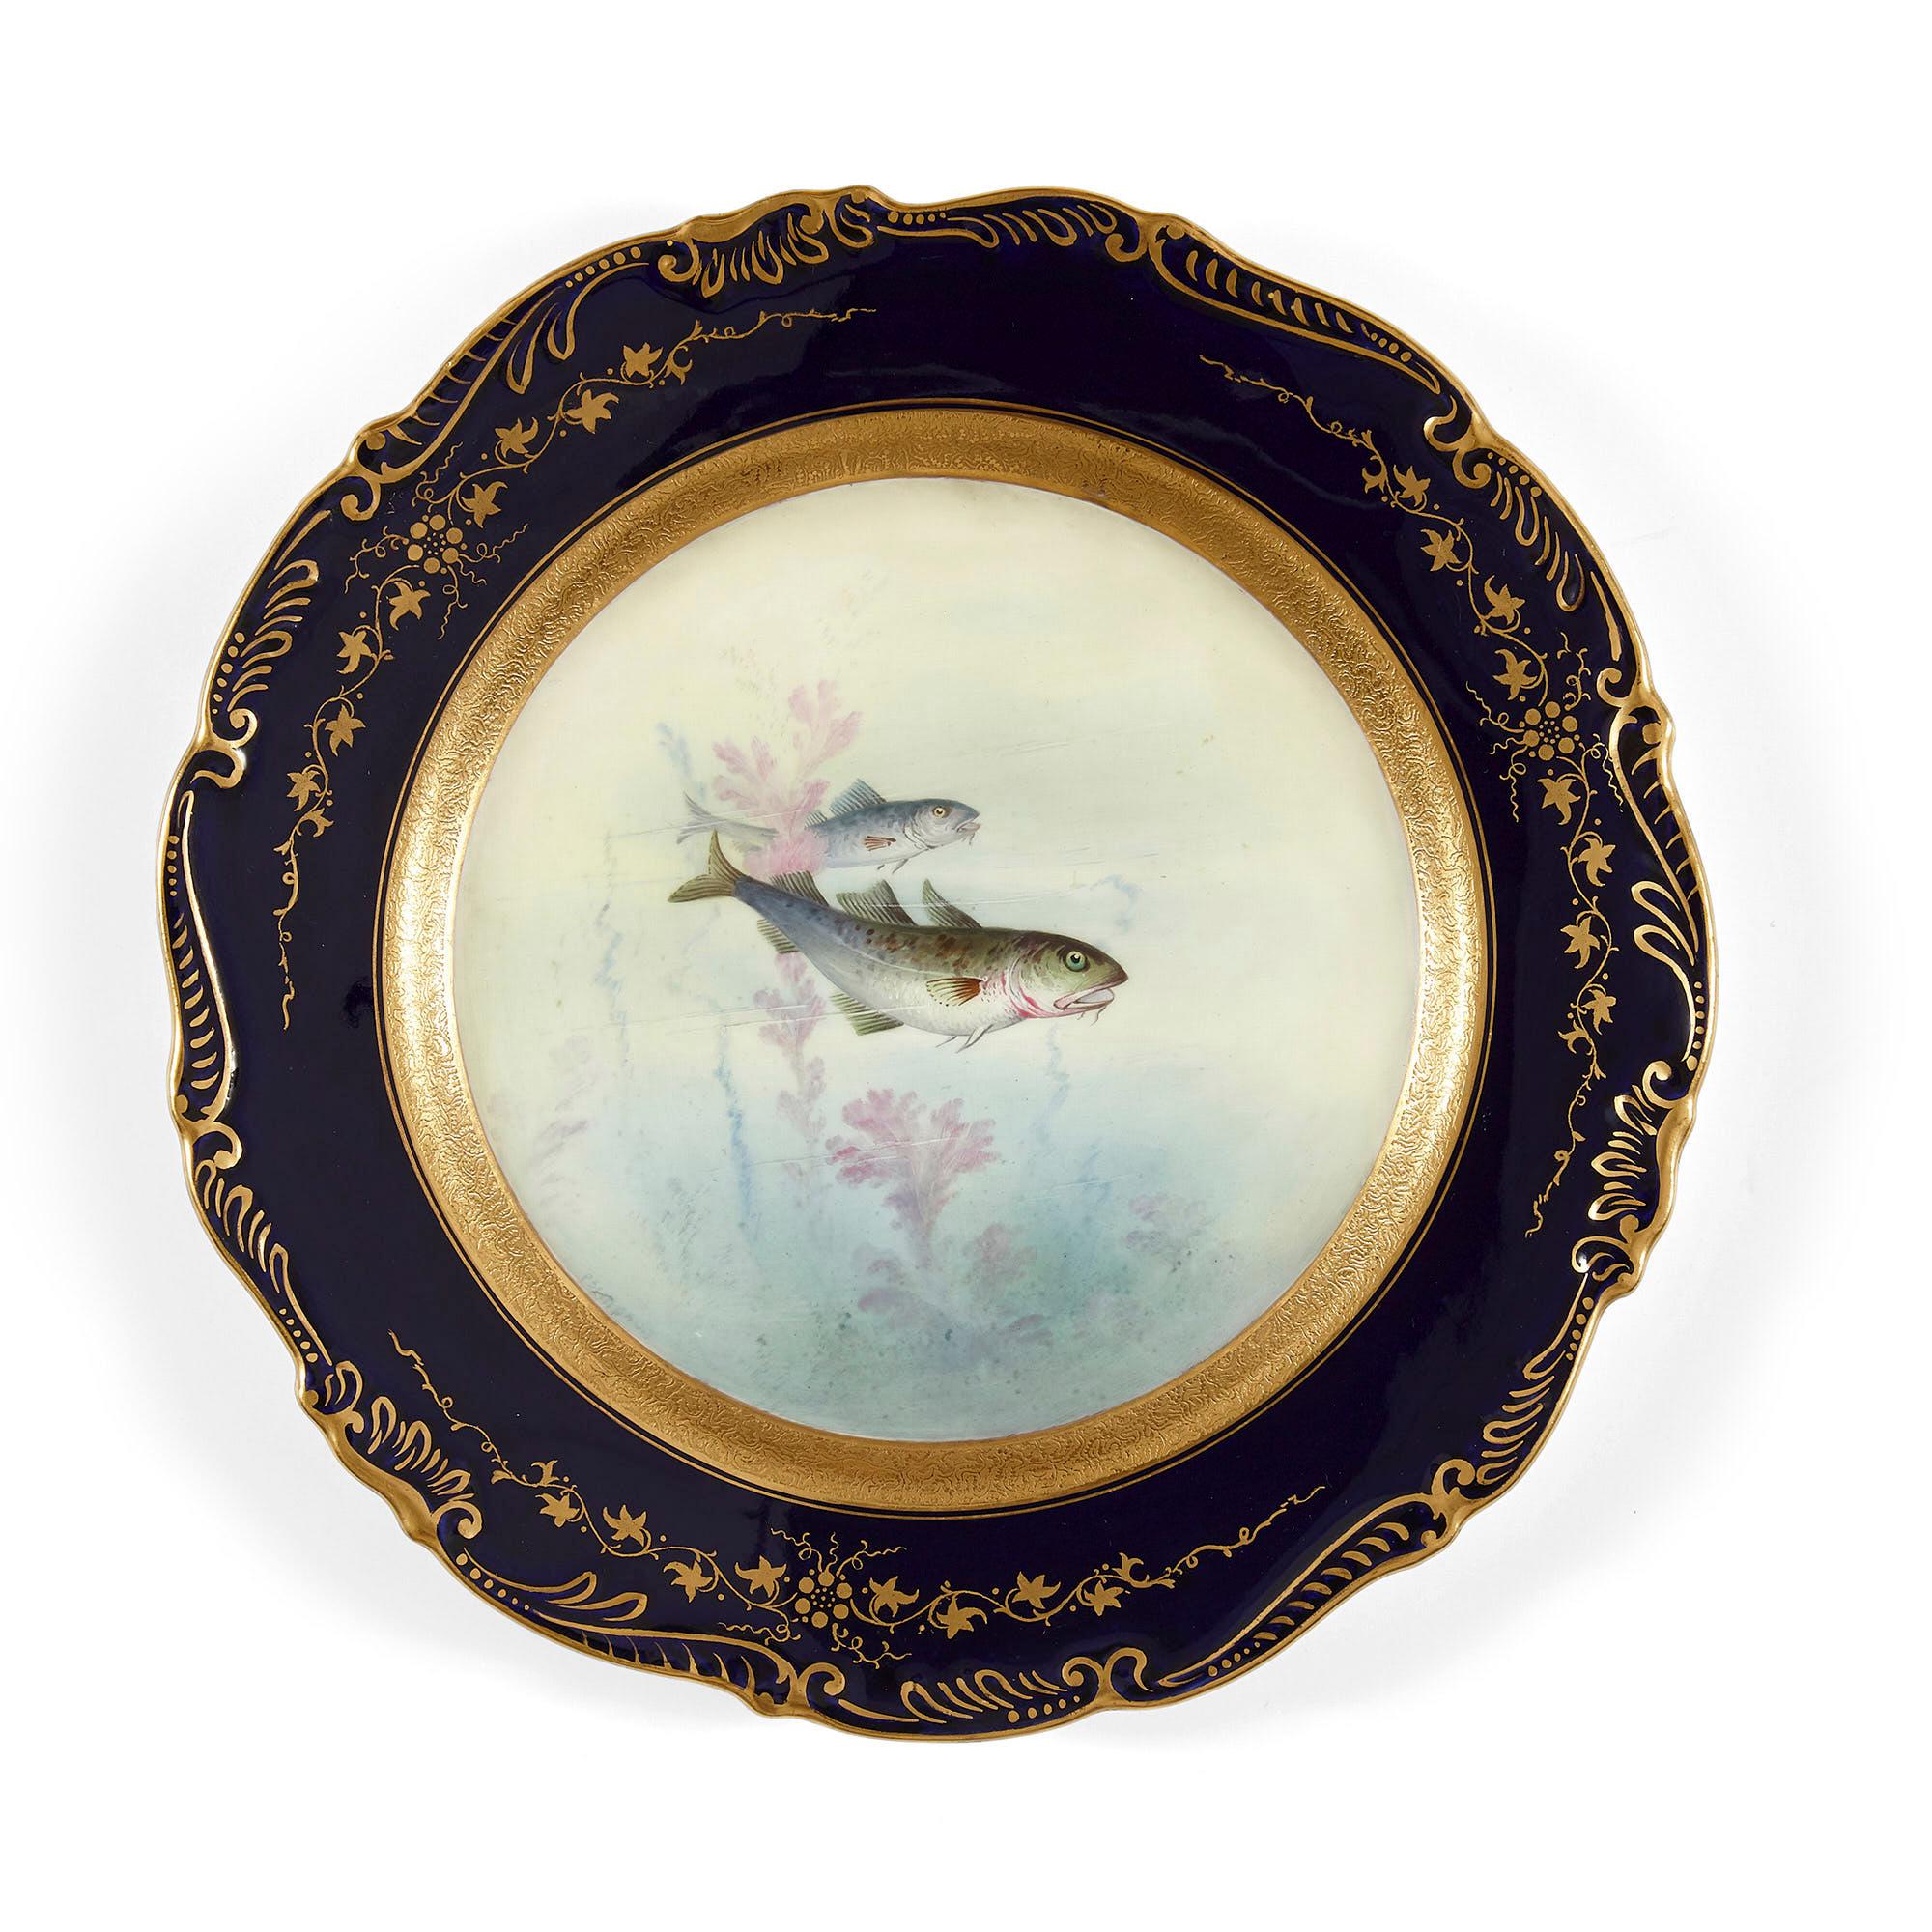 Ensemble d'assiettes plates anciennes en porcelaine Coalport représentant des poissons anglais.
Anglais, fin du 19e siècle
Dimensions : Hauteur 2cm, diamètre 22cm

Ce charmant ensemble de neuf assiettes à dîner est de forme circulaire, chacune